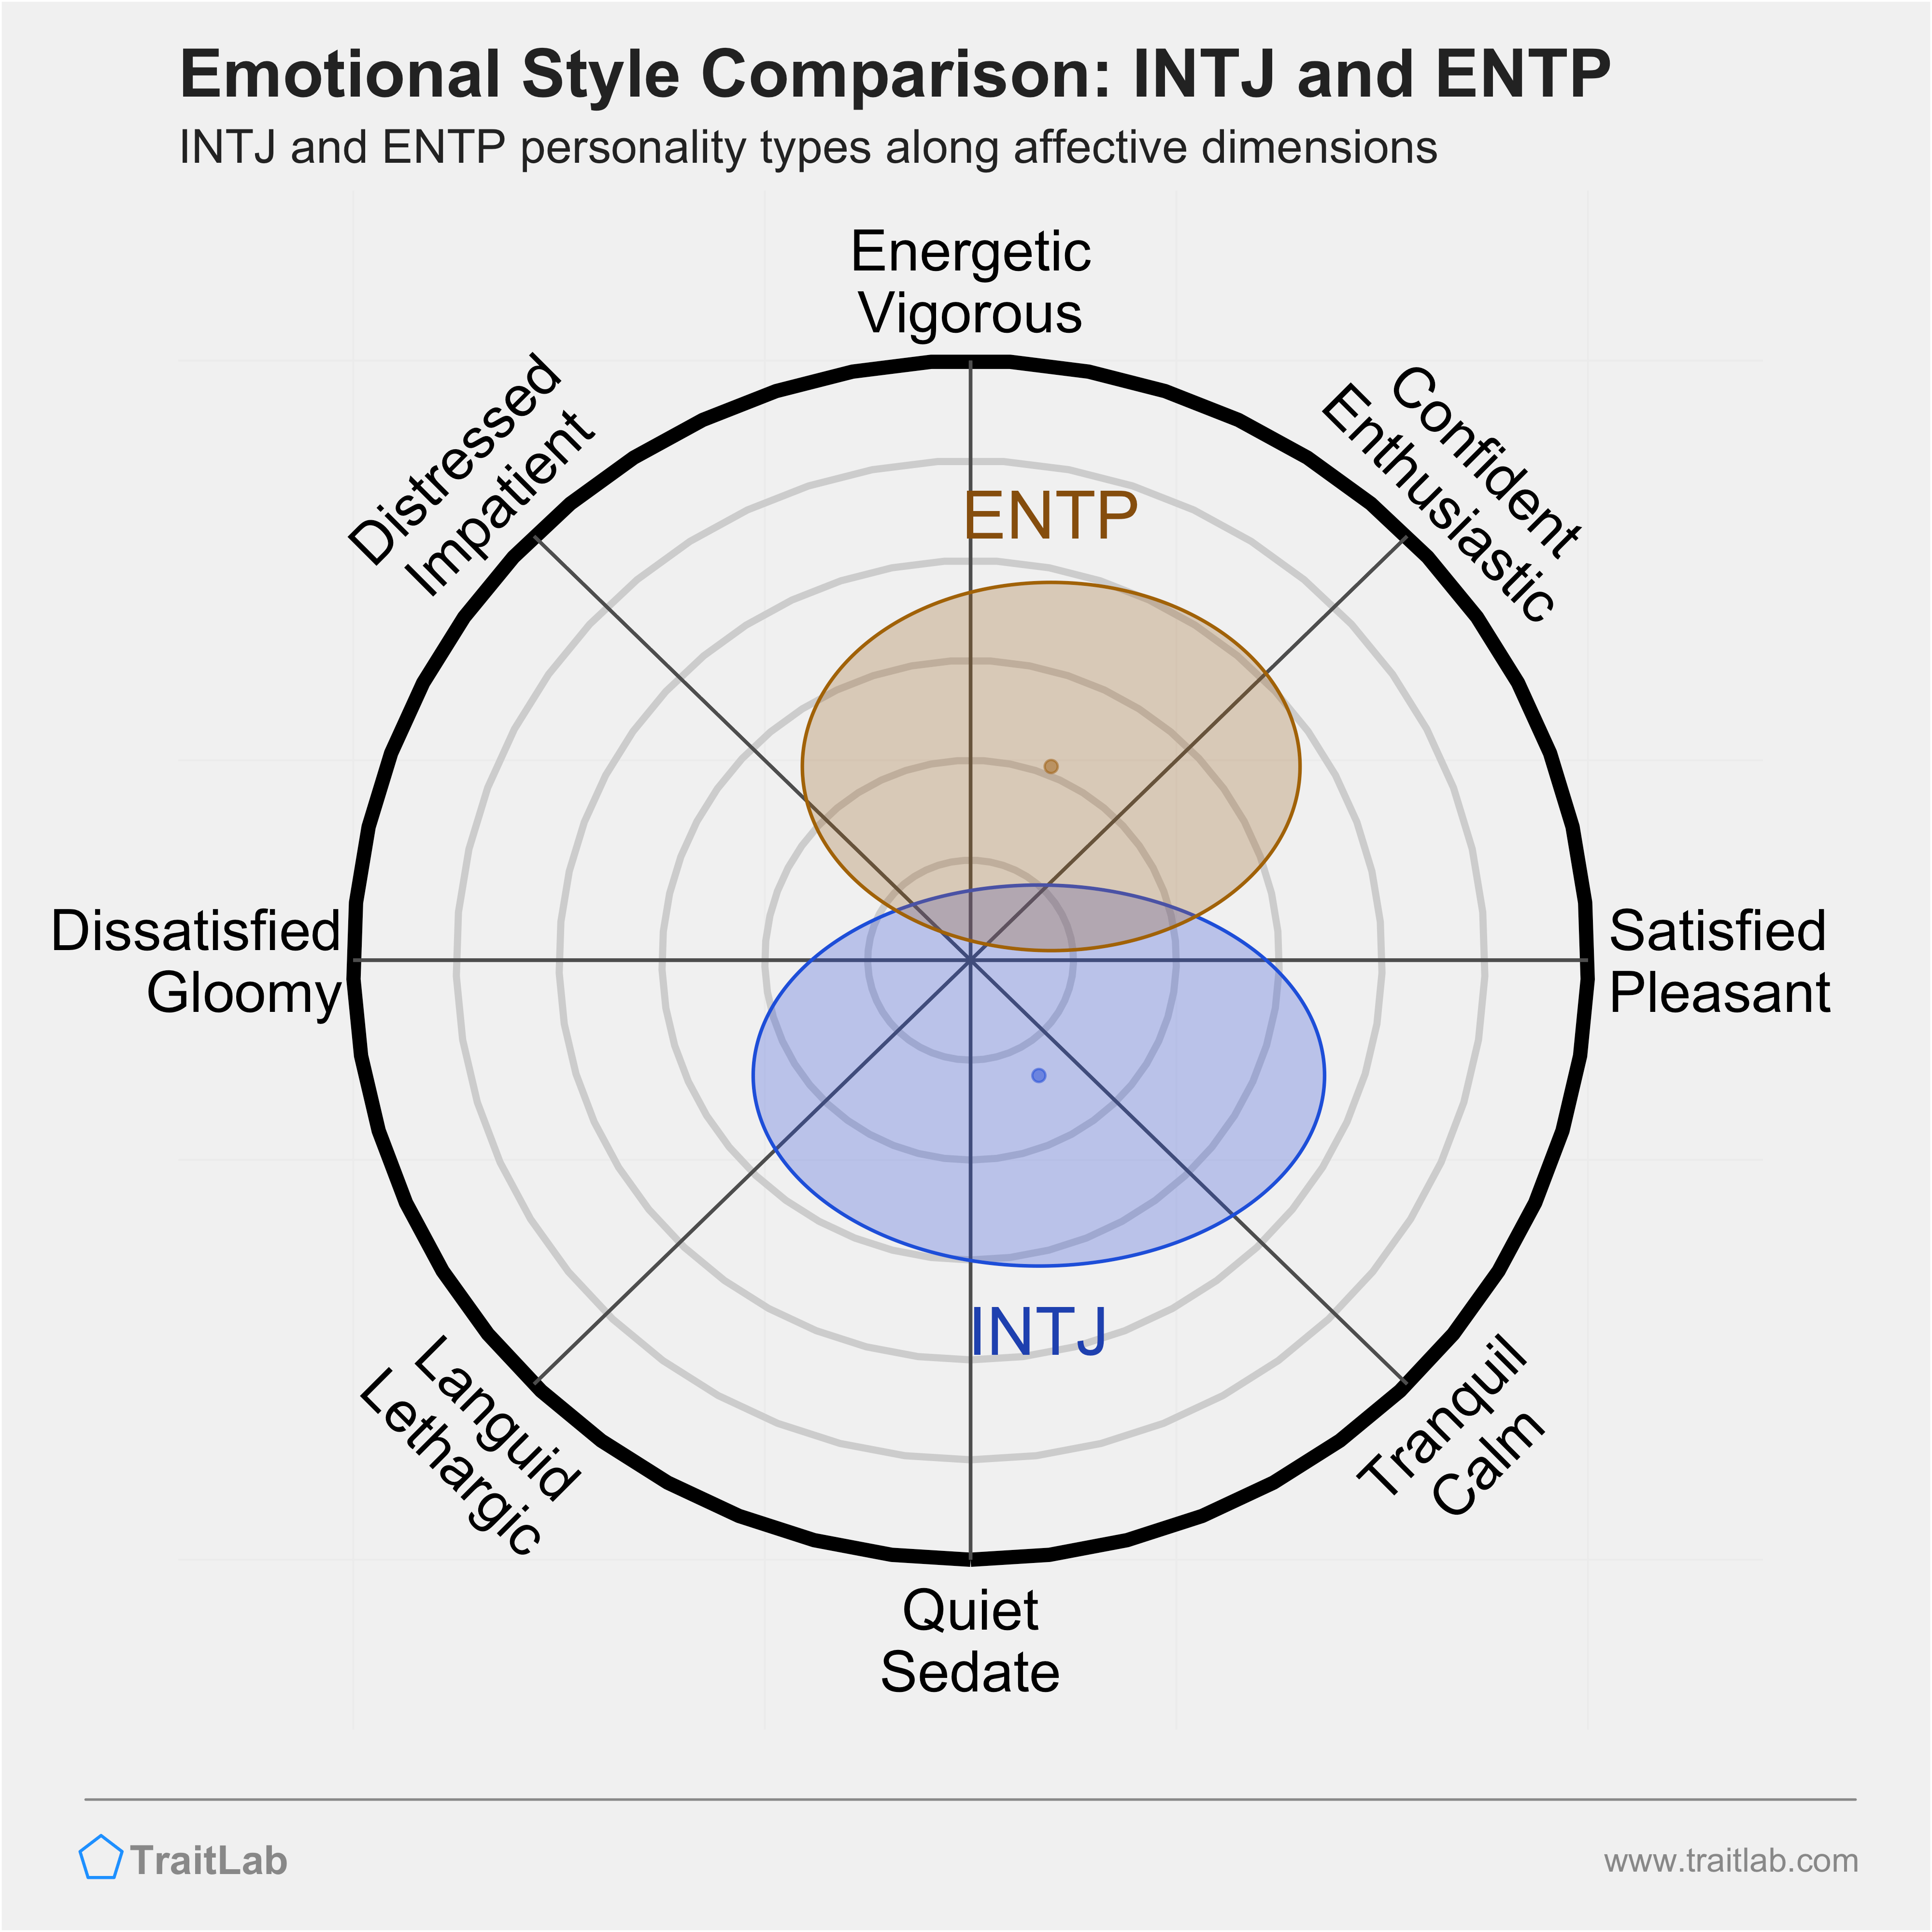 INTJ and ENTP comparison across emotional (affective) dimensions